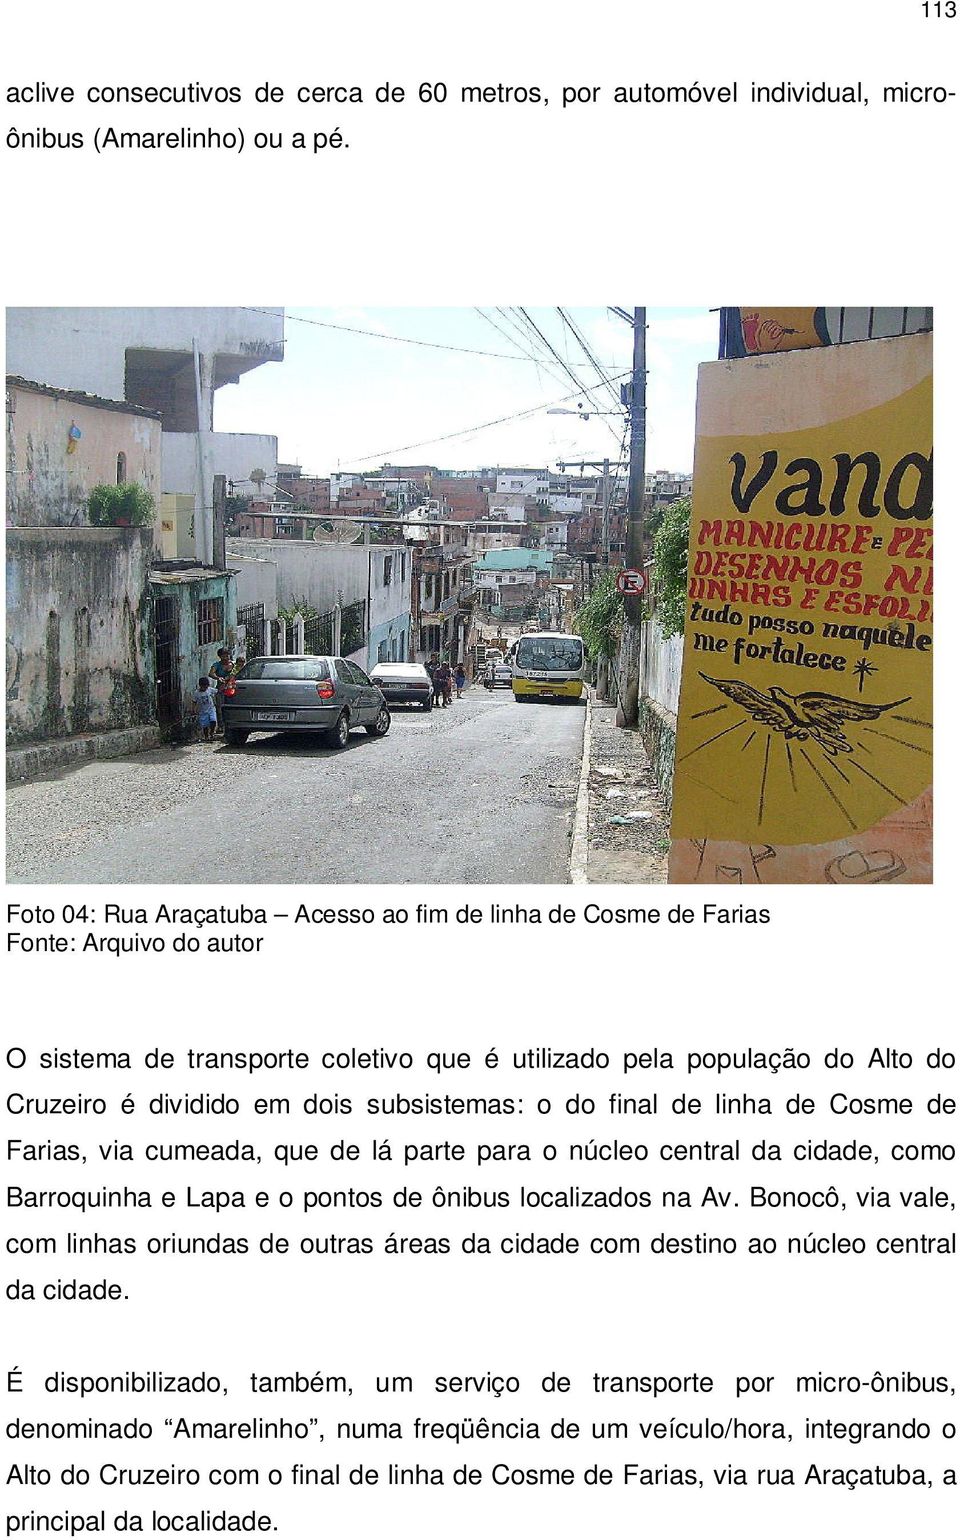 subsistemas: o do final de linha de Cosme de Farias, via cumeada, que de lá parte para o núcleo central da cidade, como Barroquinha e Lapa e o pontos de ônibus localizados na Av.